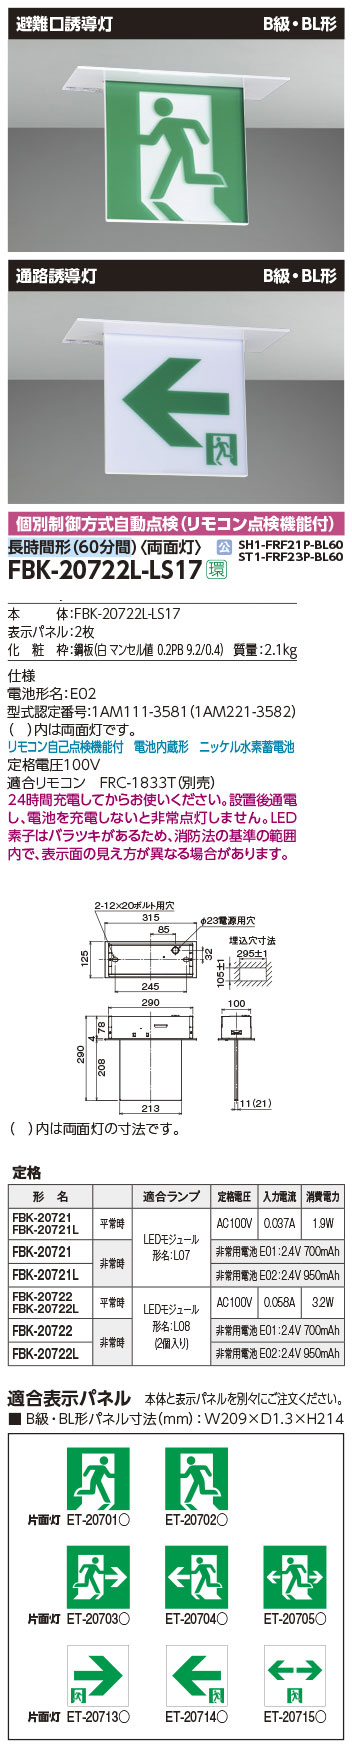 FBK-20702-LS17 || LED誘導灯本体 東芝 【天井・壁直付形/天井吊下形